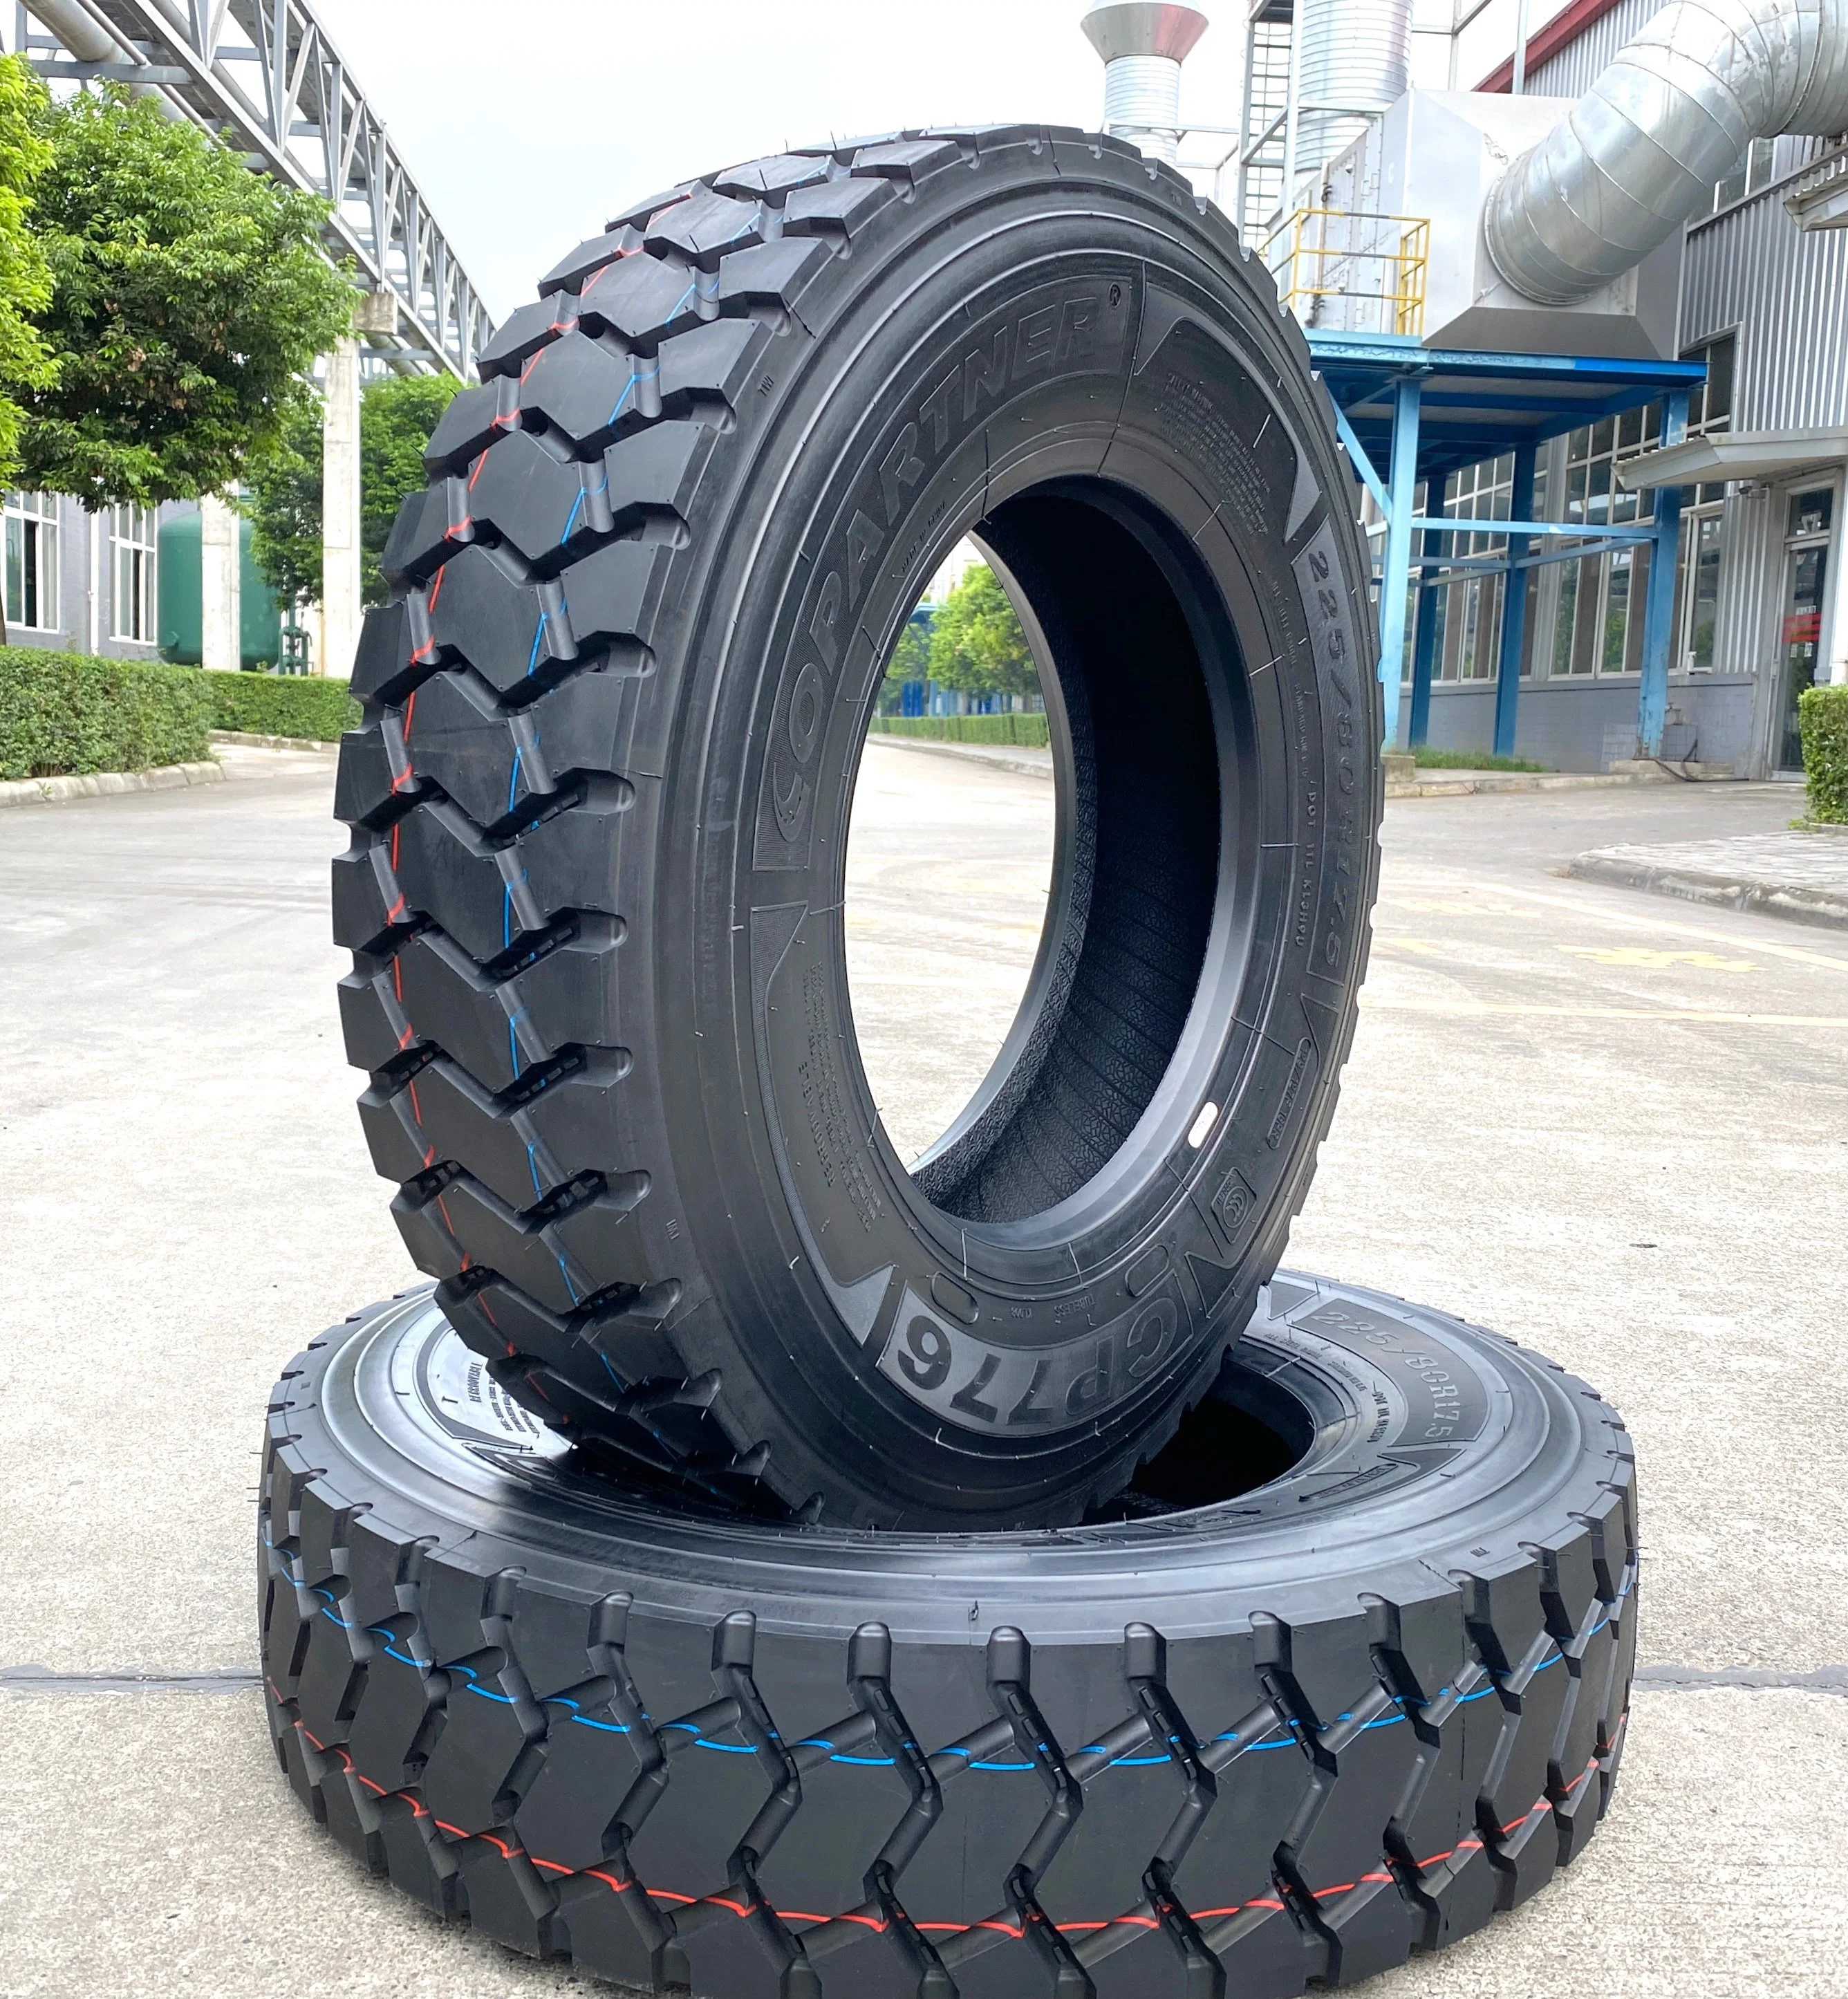 Top Brands fábrica de neumáticos China Copartner doble/Frideric/Chilong/Joyland/Haida descuento TBR Neumático PCR OTR neumático radial de servicio pesado para camiones